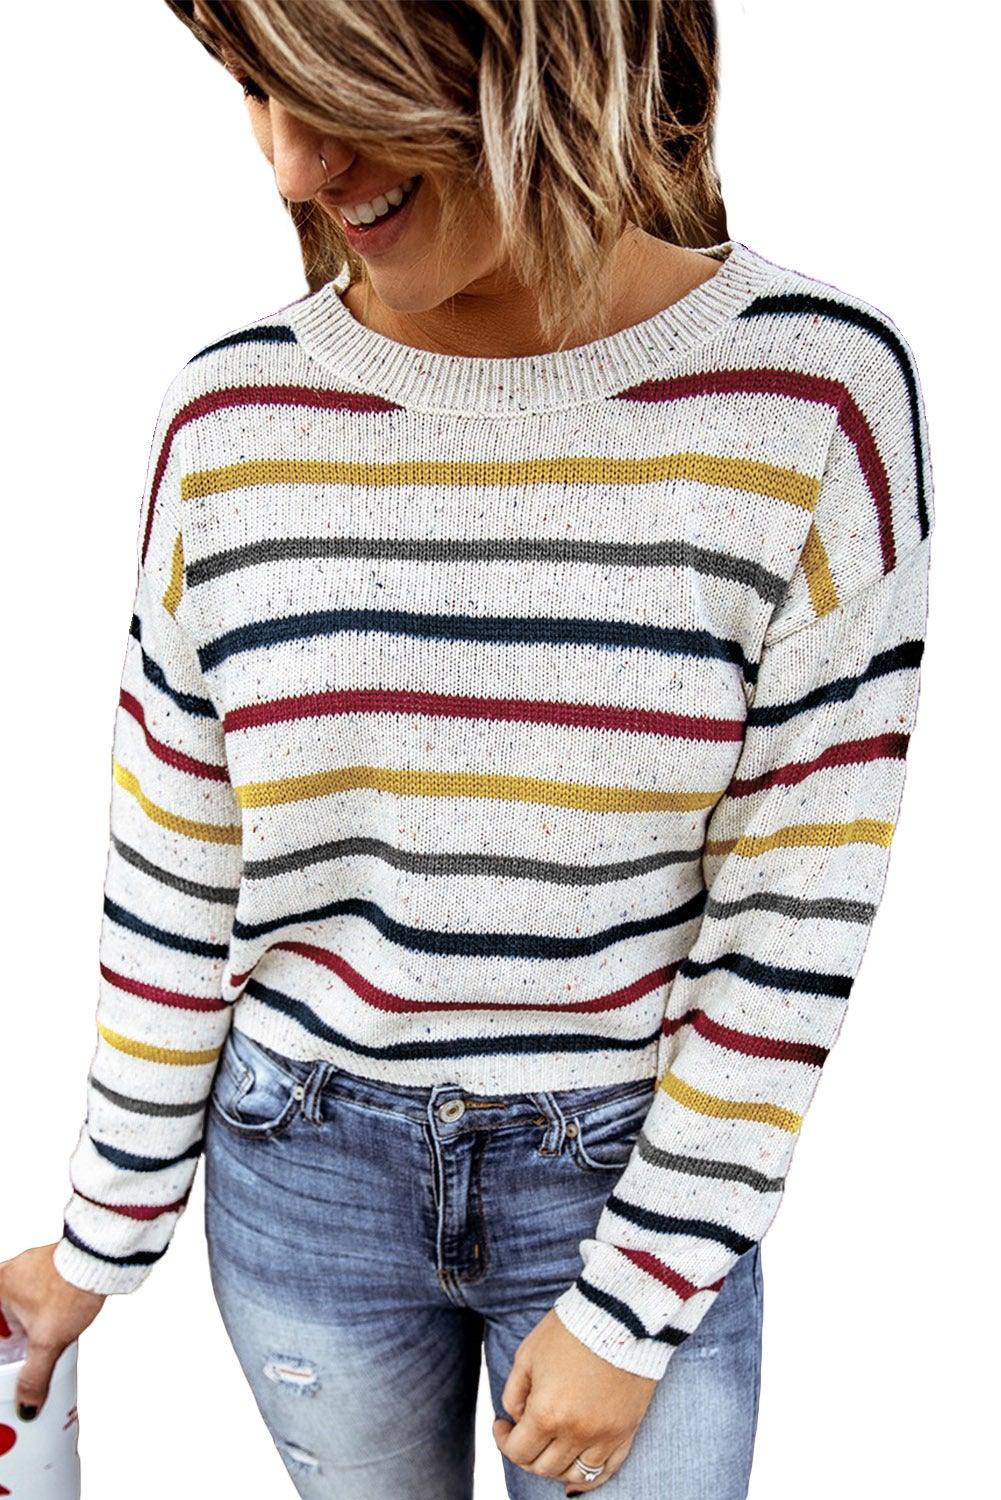 Striped Drop Sleeve Crew Neck Knit Sweater - L & M Kee, LLC